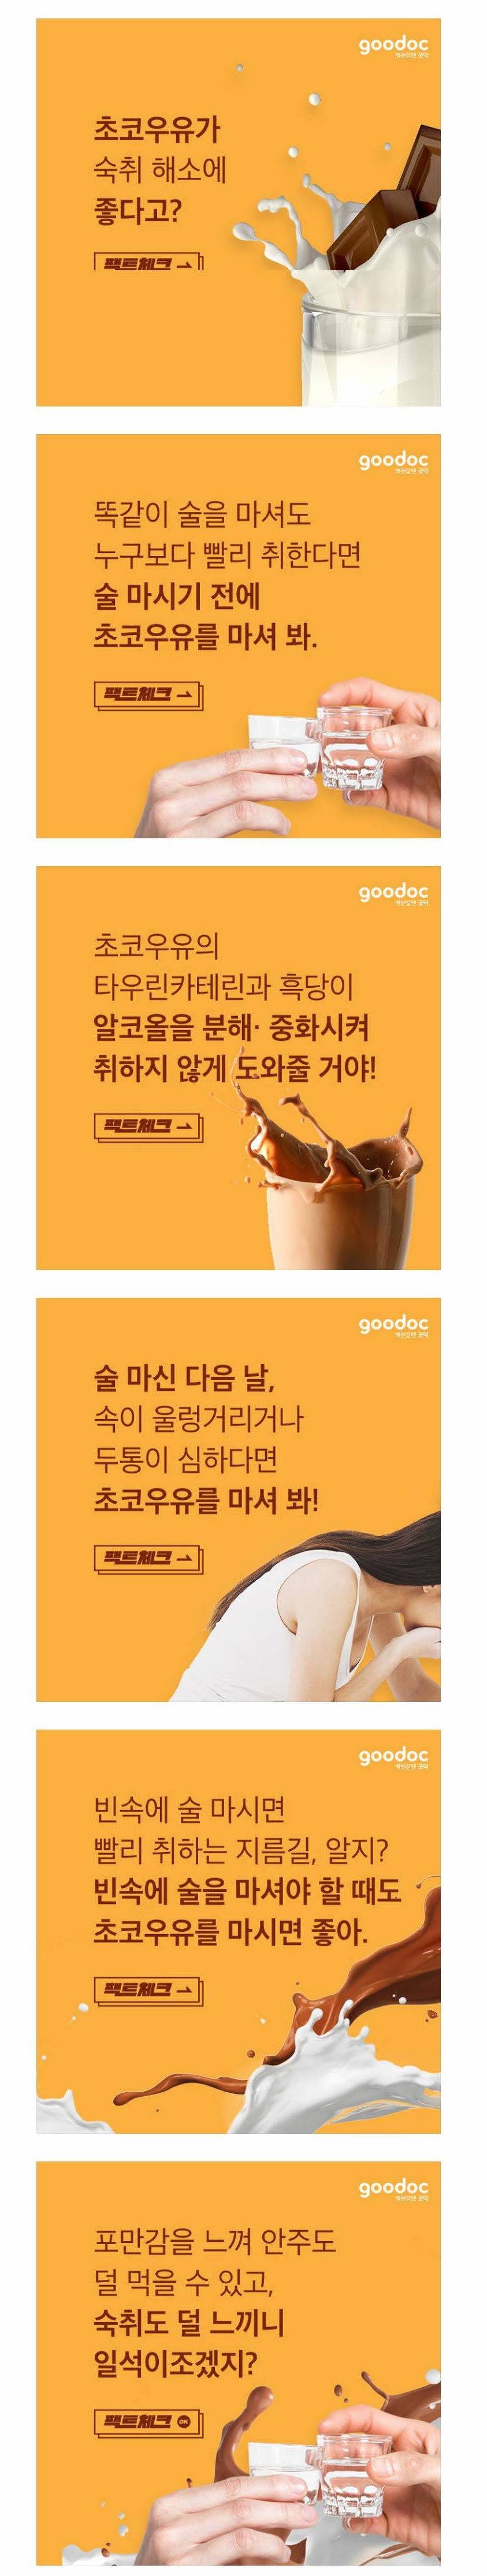 초코우유의 놀라운 숙취 해소 효과.jpg - 인스티즈(instiz) 인티포털 카테고리